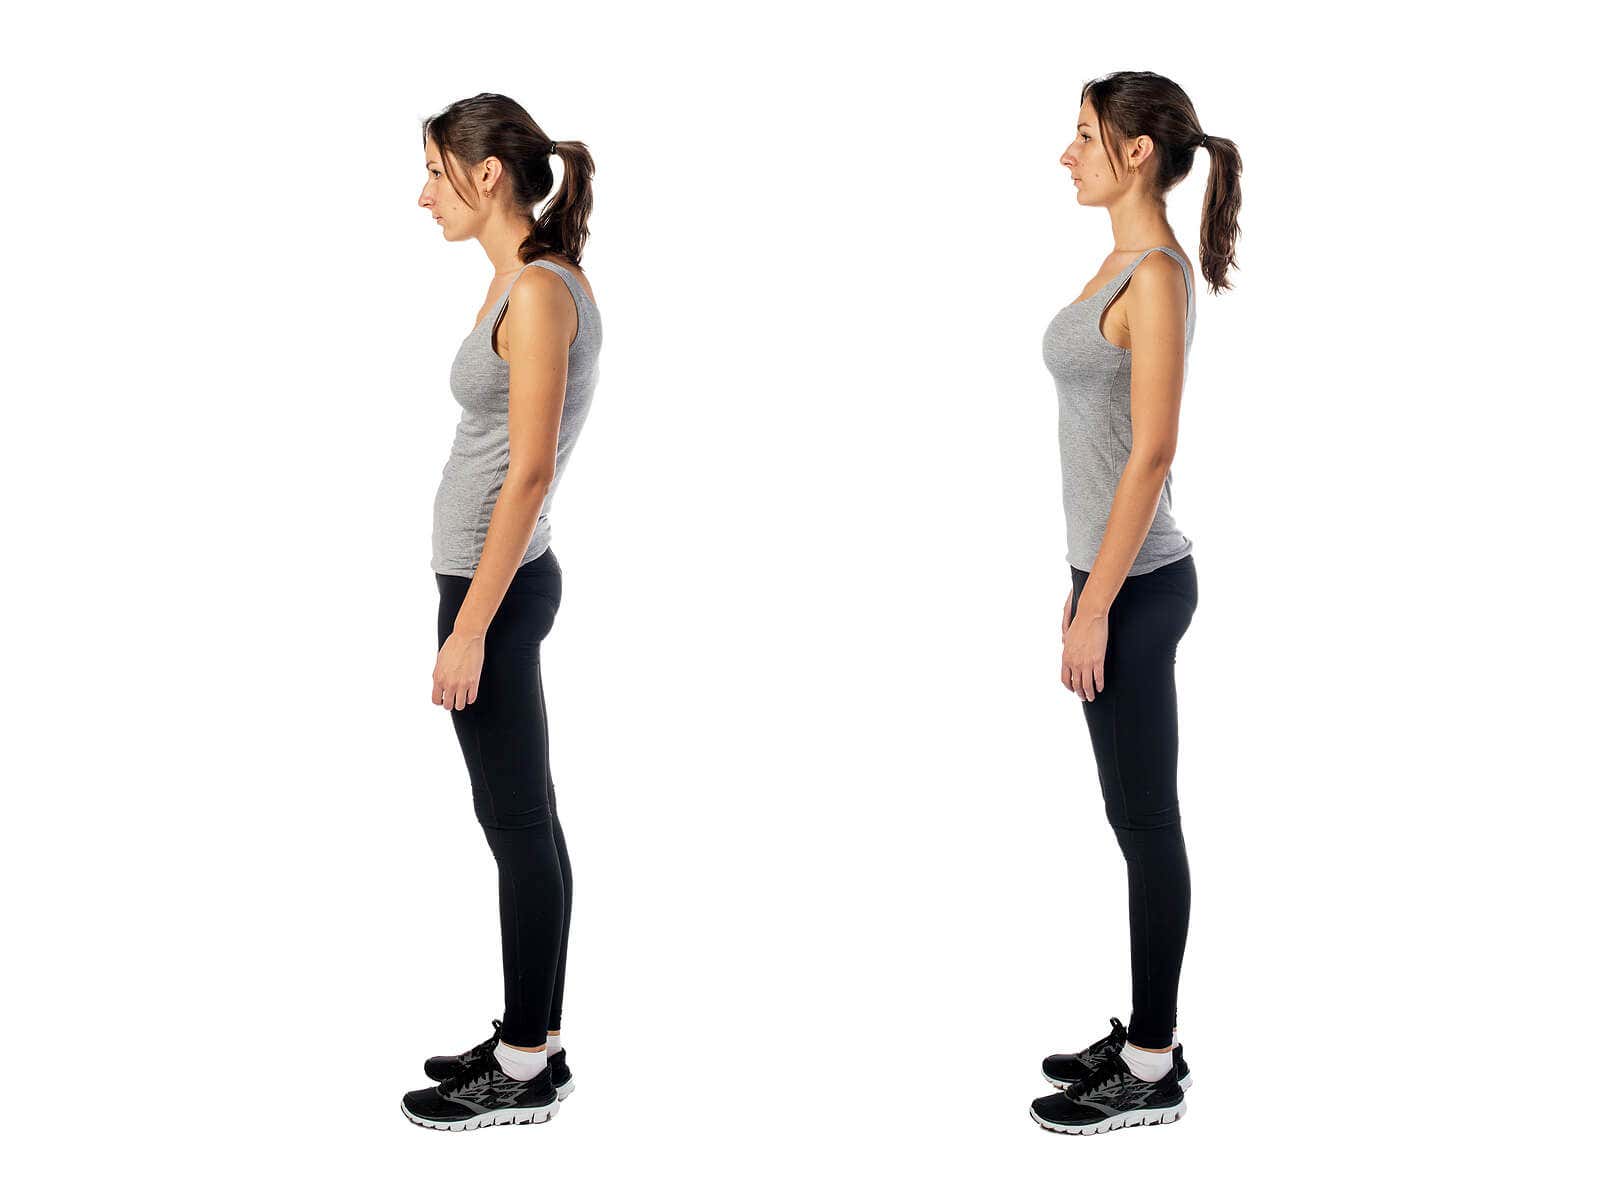 Se recomienda mejorar la postura corporal para evitar dolores.